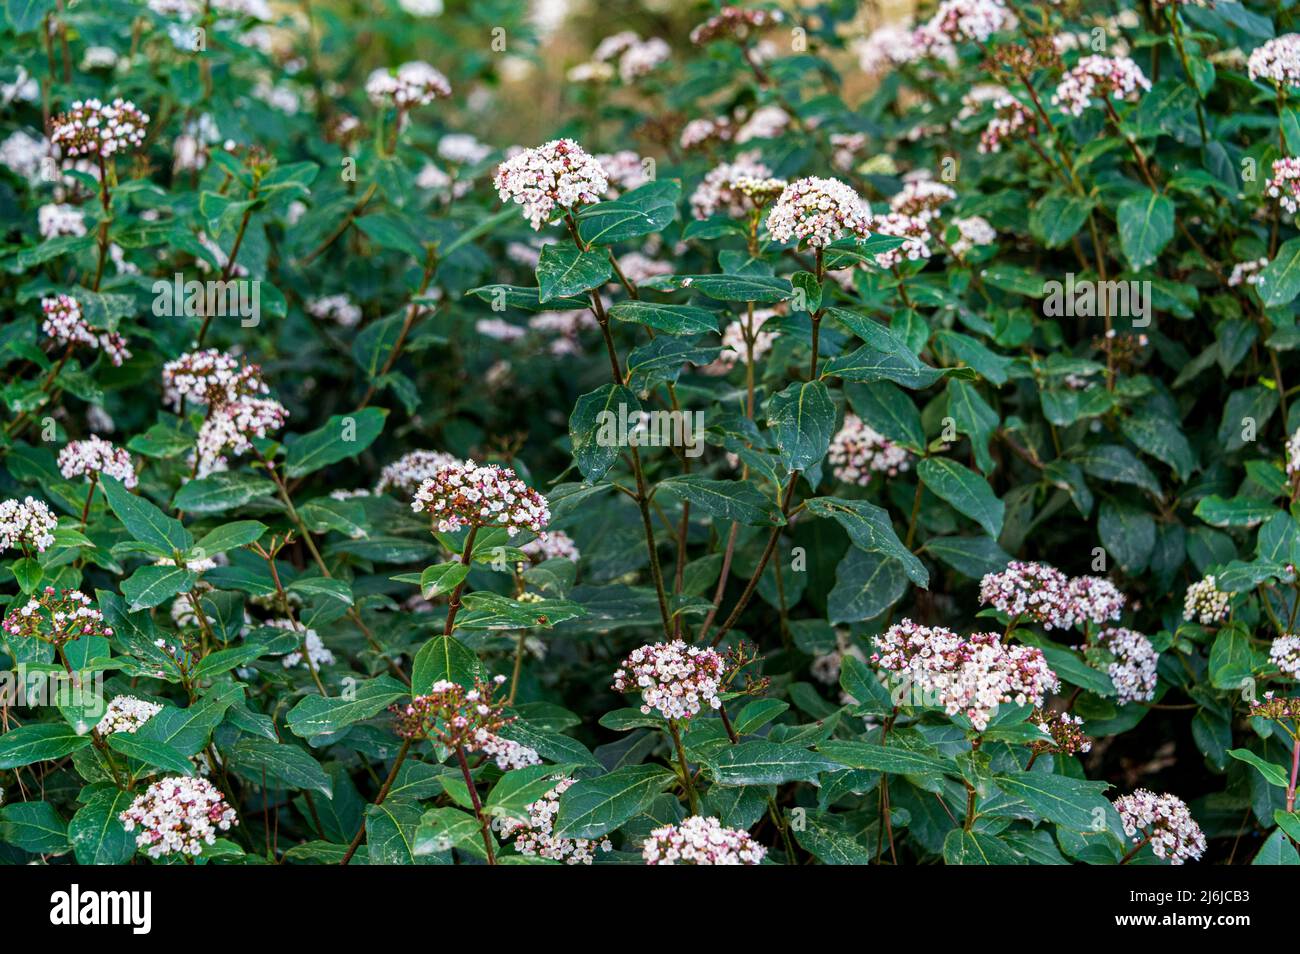 Viburnum tinus purpureum, Viburnum tinus purpureum, Laurustinus purpureum, Viburnaceae. Fiori bianchi di Viburnum in primavera. Foto Stock